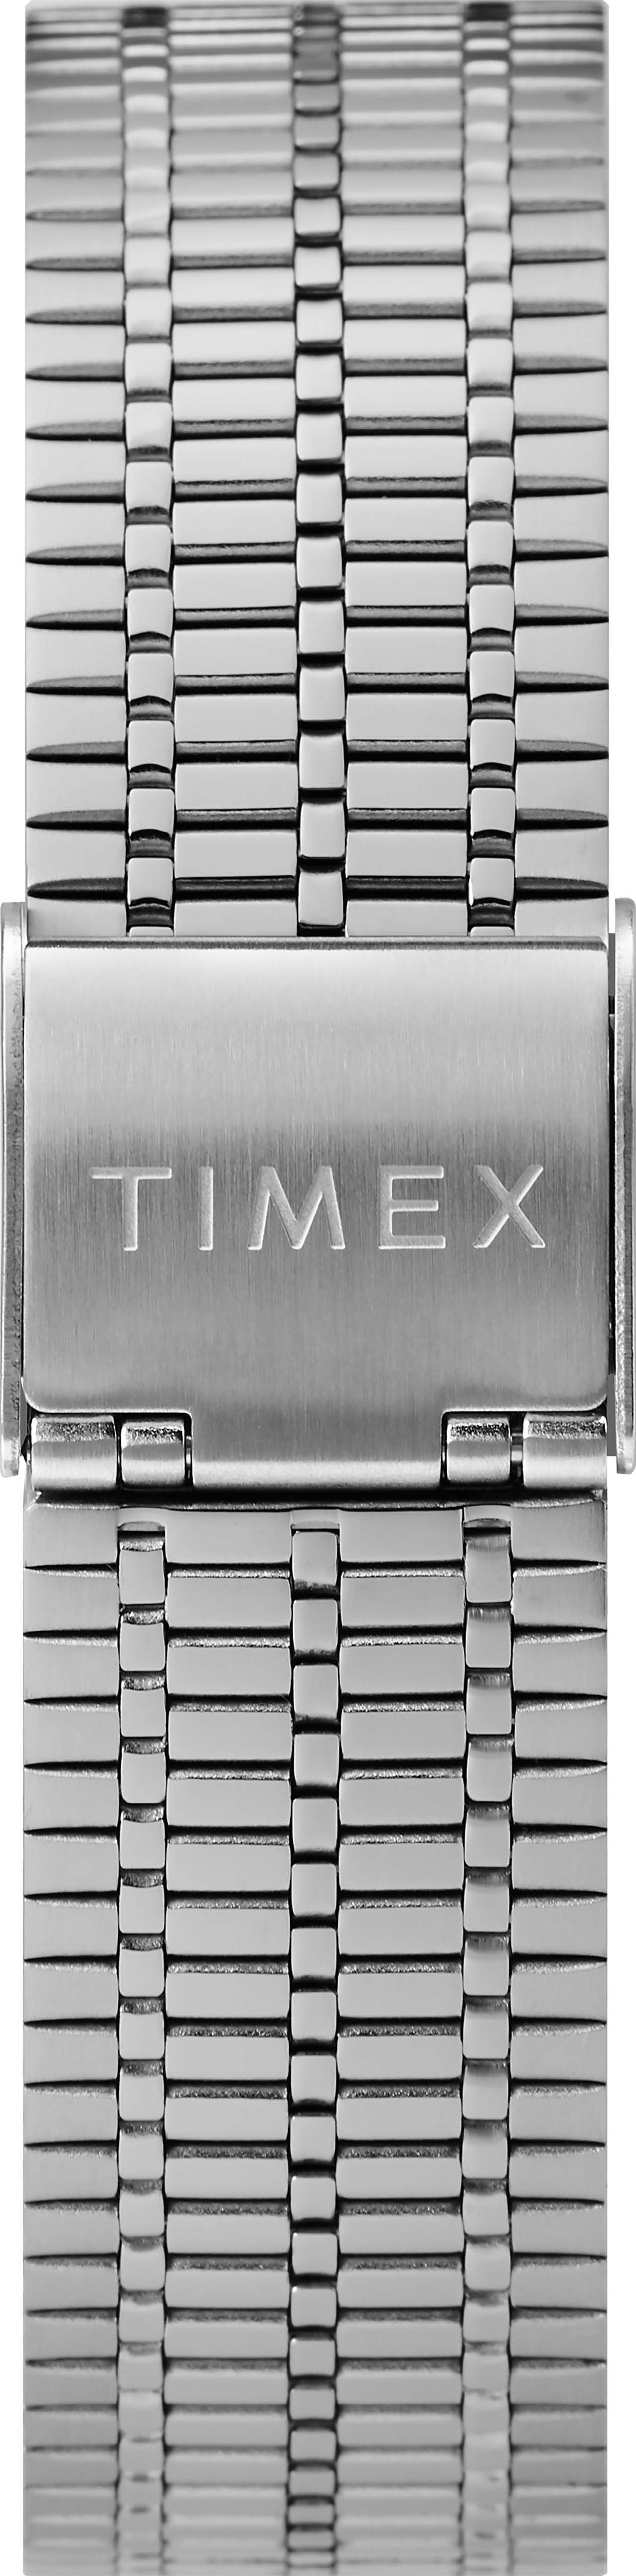 Q Timex Reissue Watch